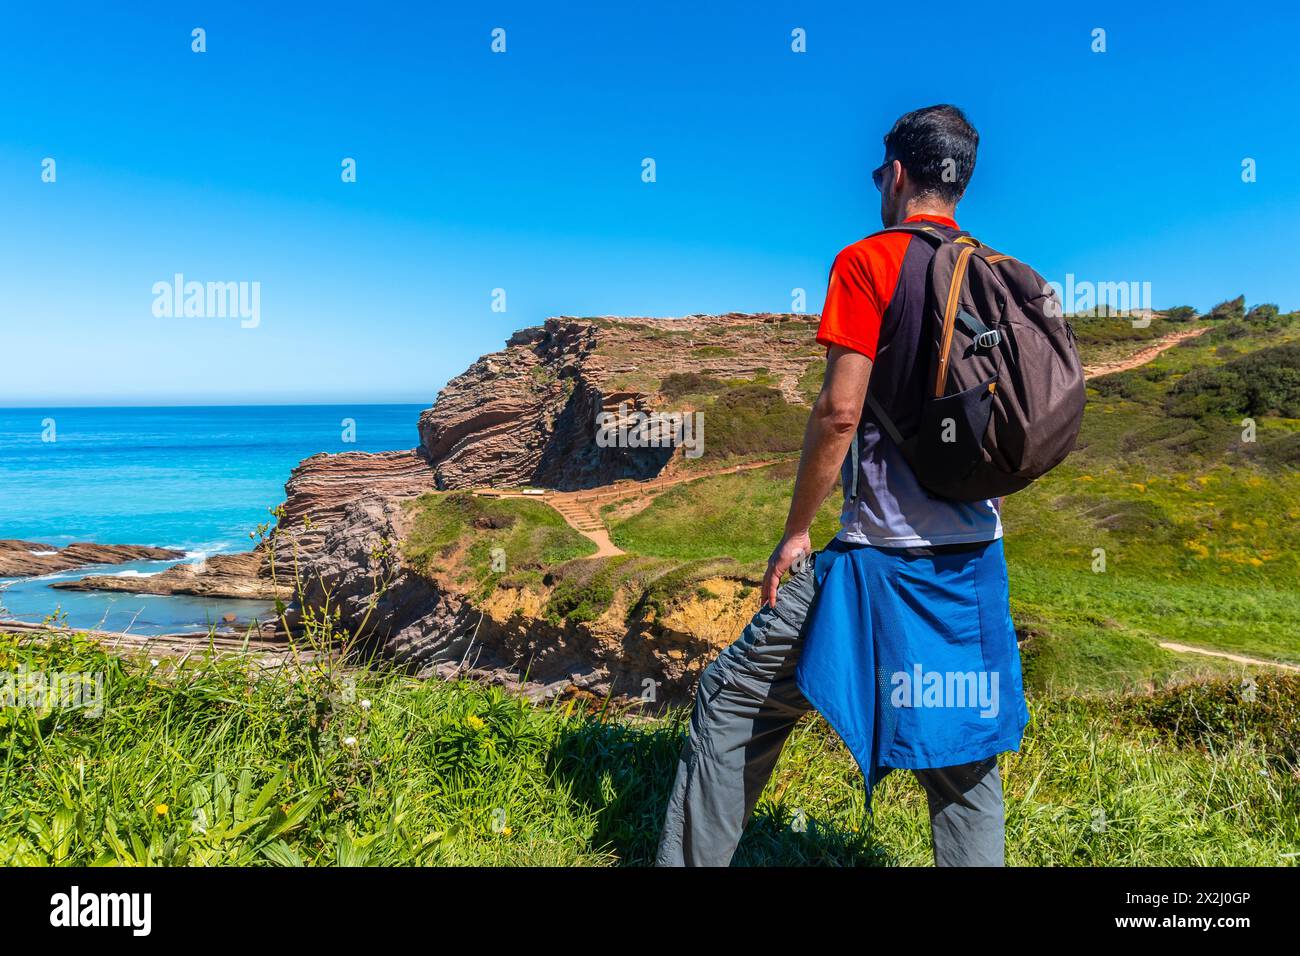 Ein Wanderer auf einem Küstenweg in der Bucht von Algorri des Flyschs Zumaia, Gipuzkoa. Baskenland Stockfoto